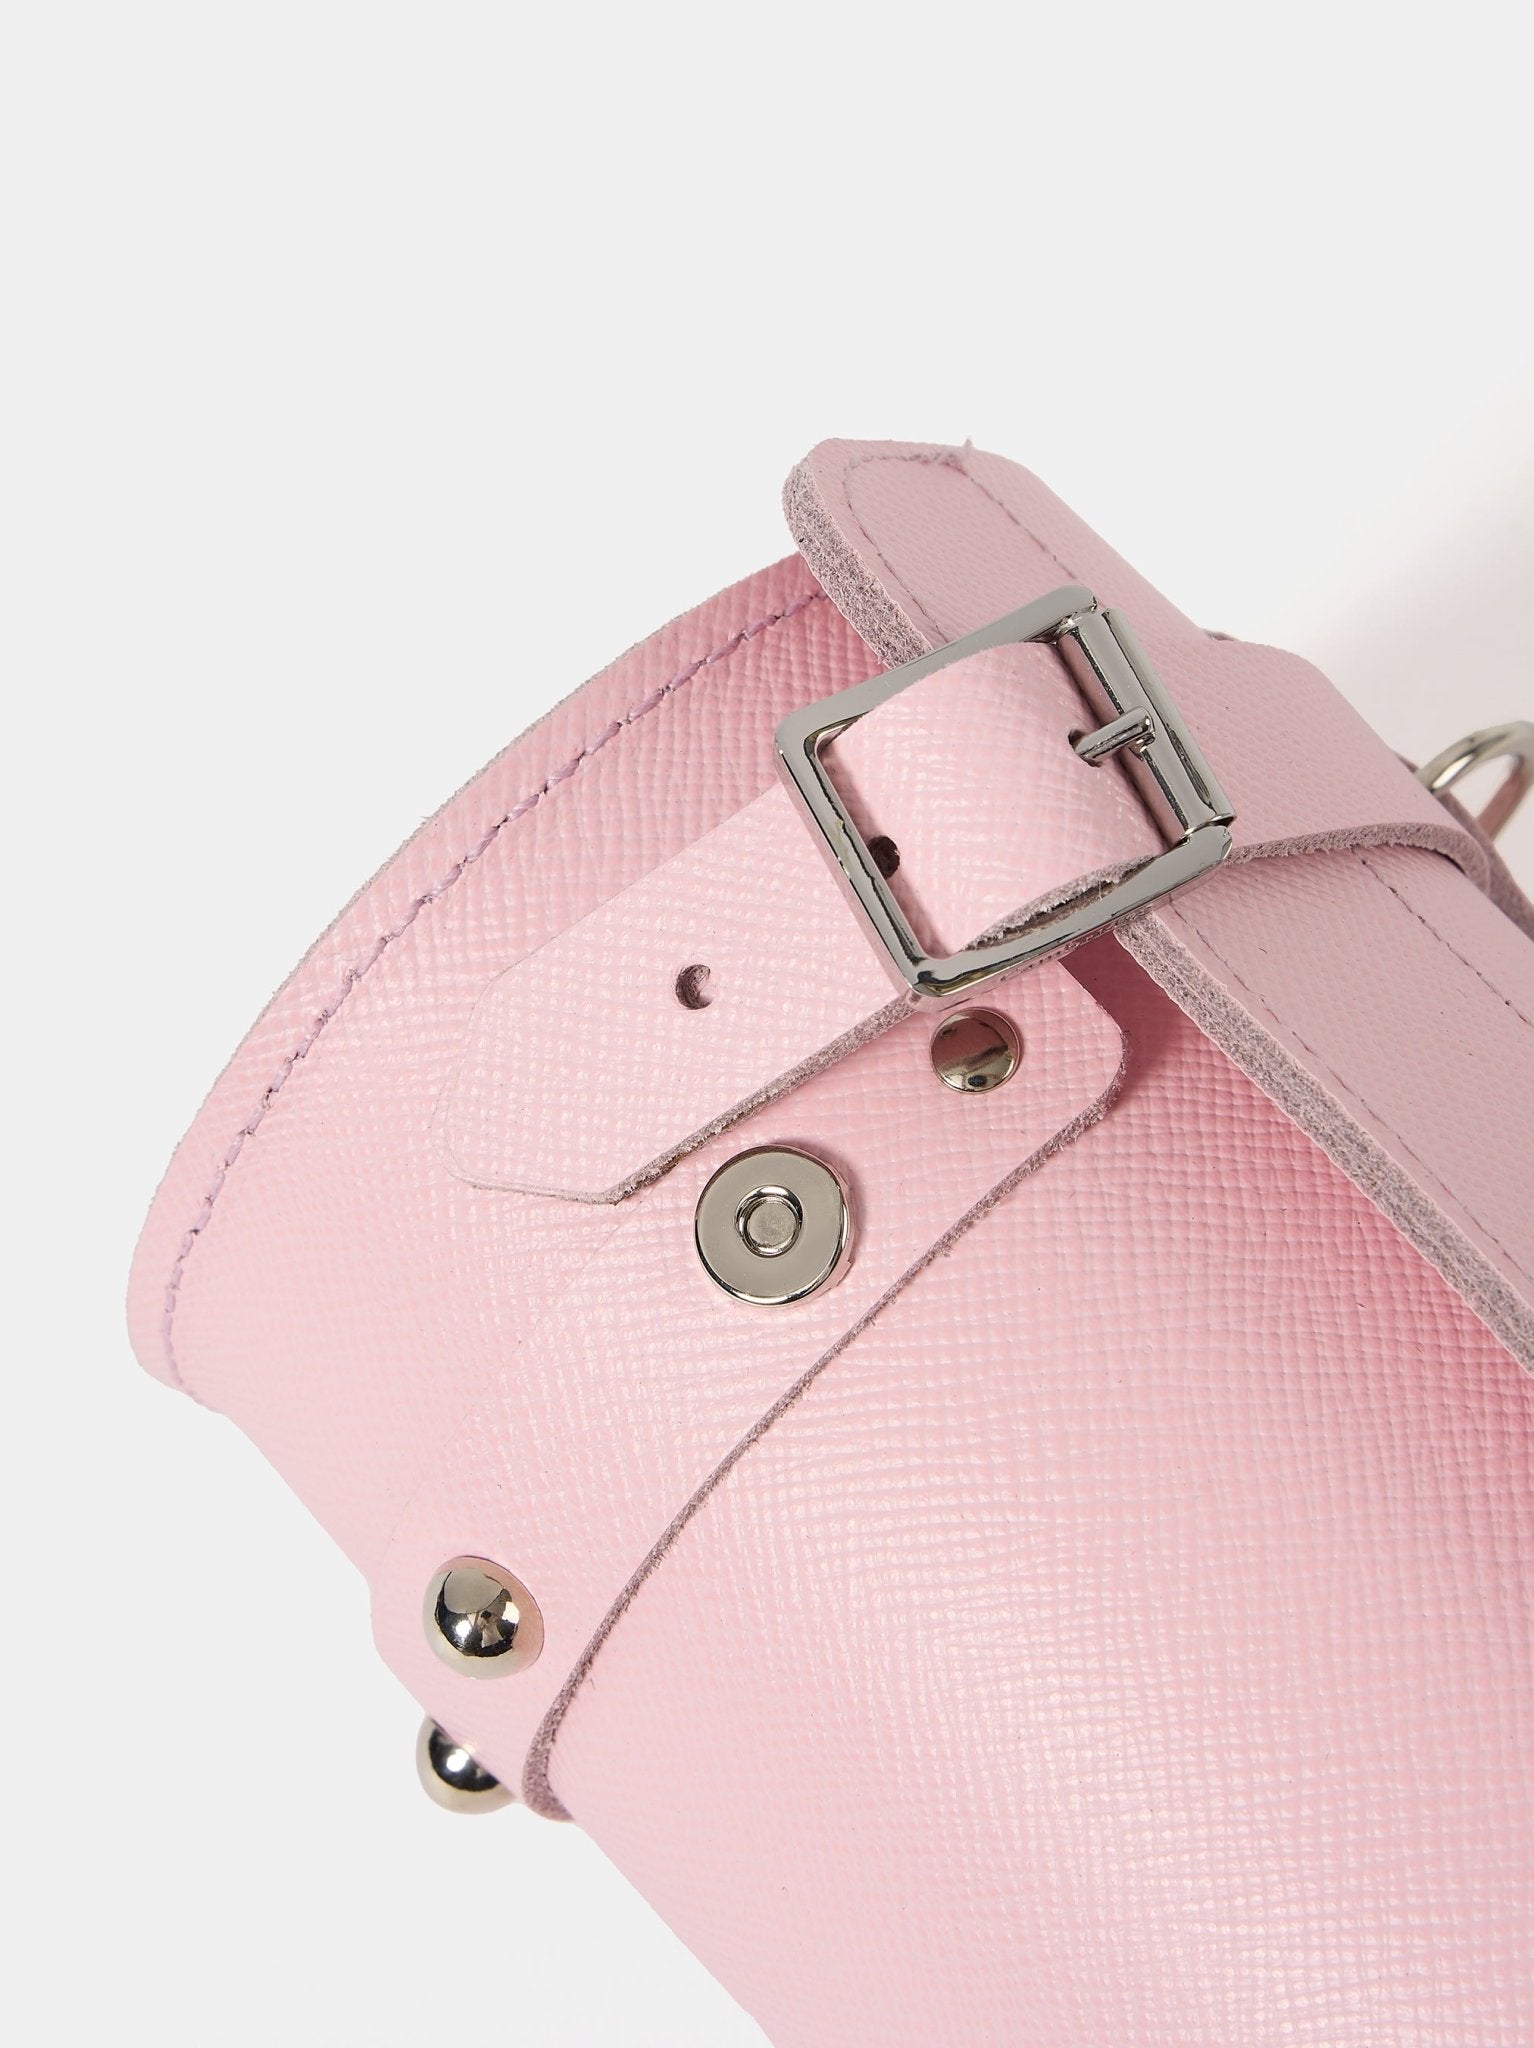 The Mini Bowls Bag - Fondant Pink Saffiano - Cambridge Satchel